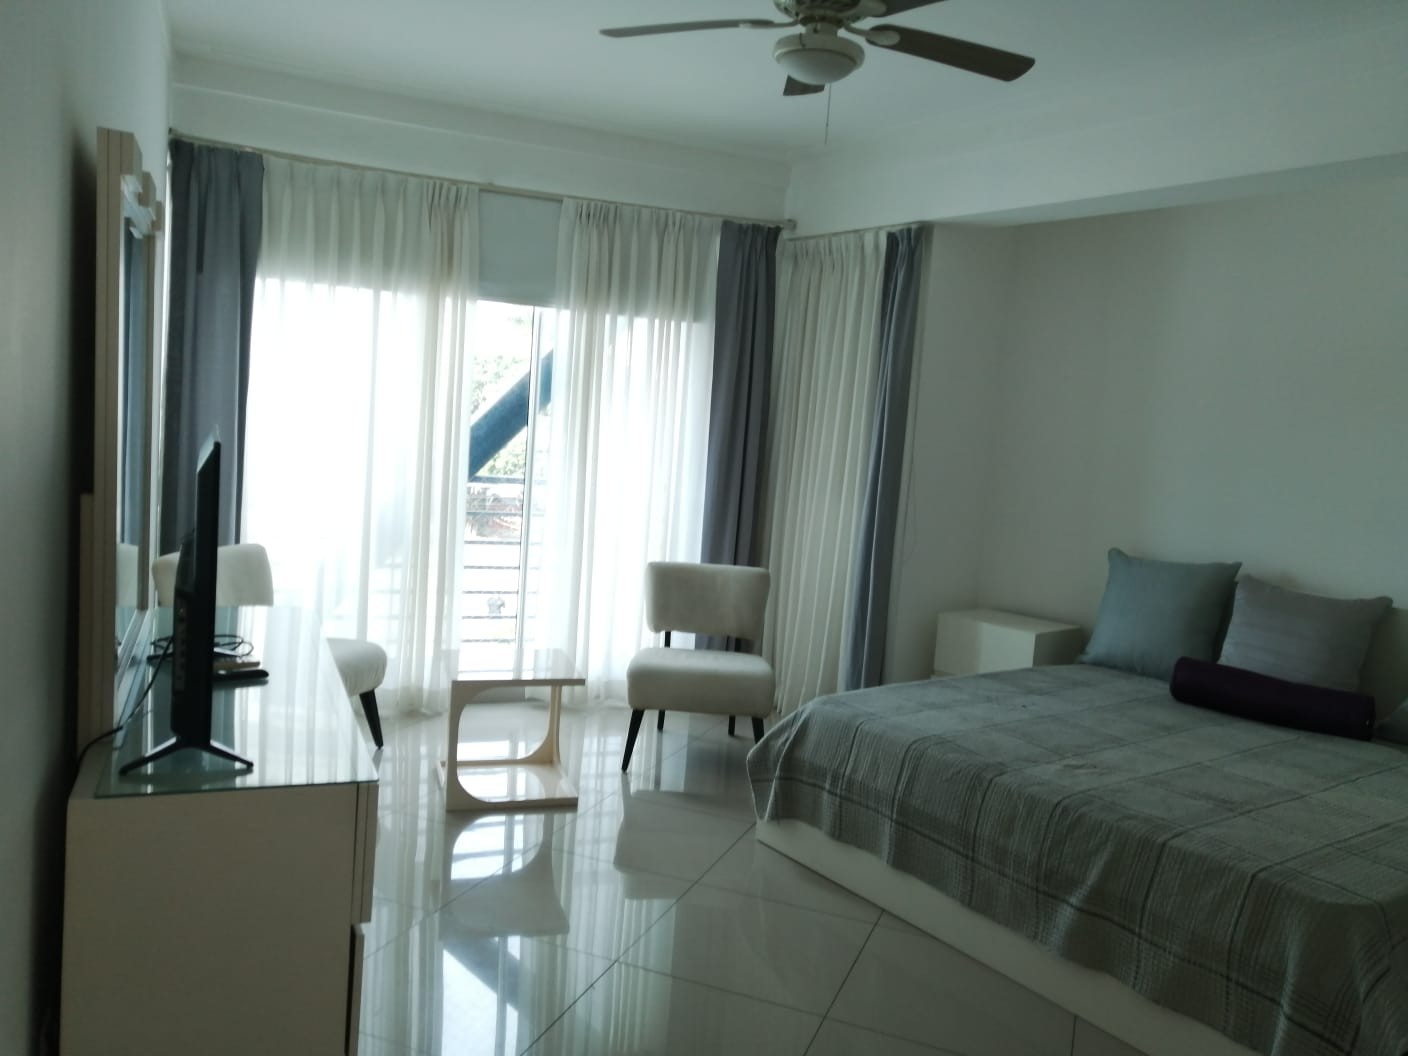 apartamentos - Alquiler: Apartamento 3 habs, amueblado, equipado con linea blanca, Serralles. 
